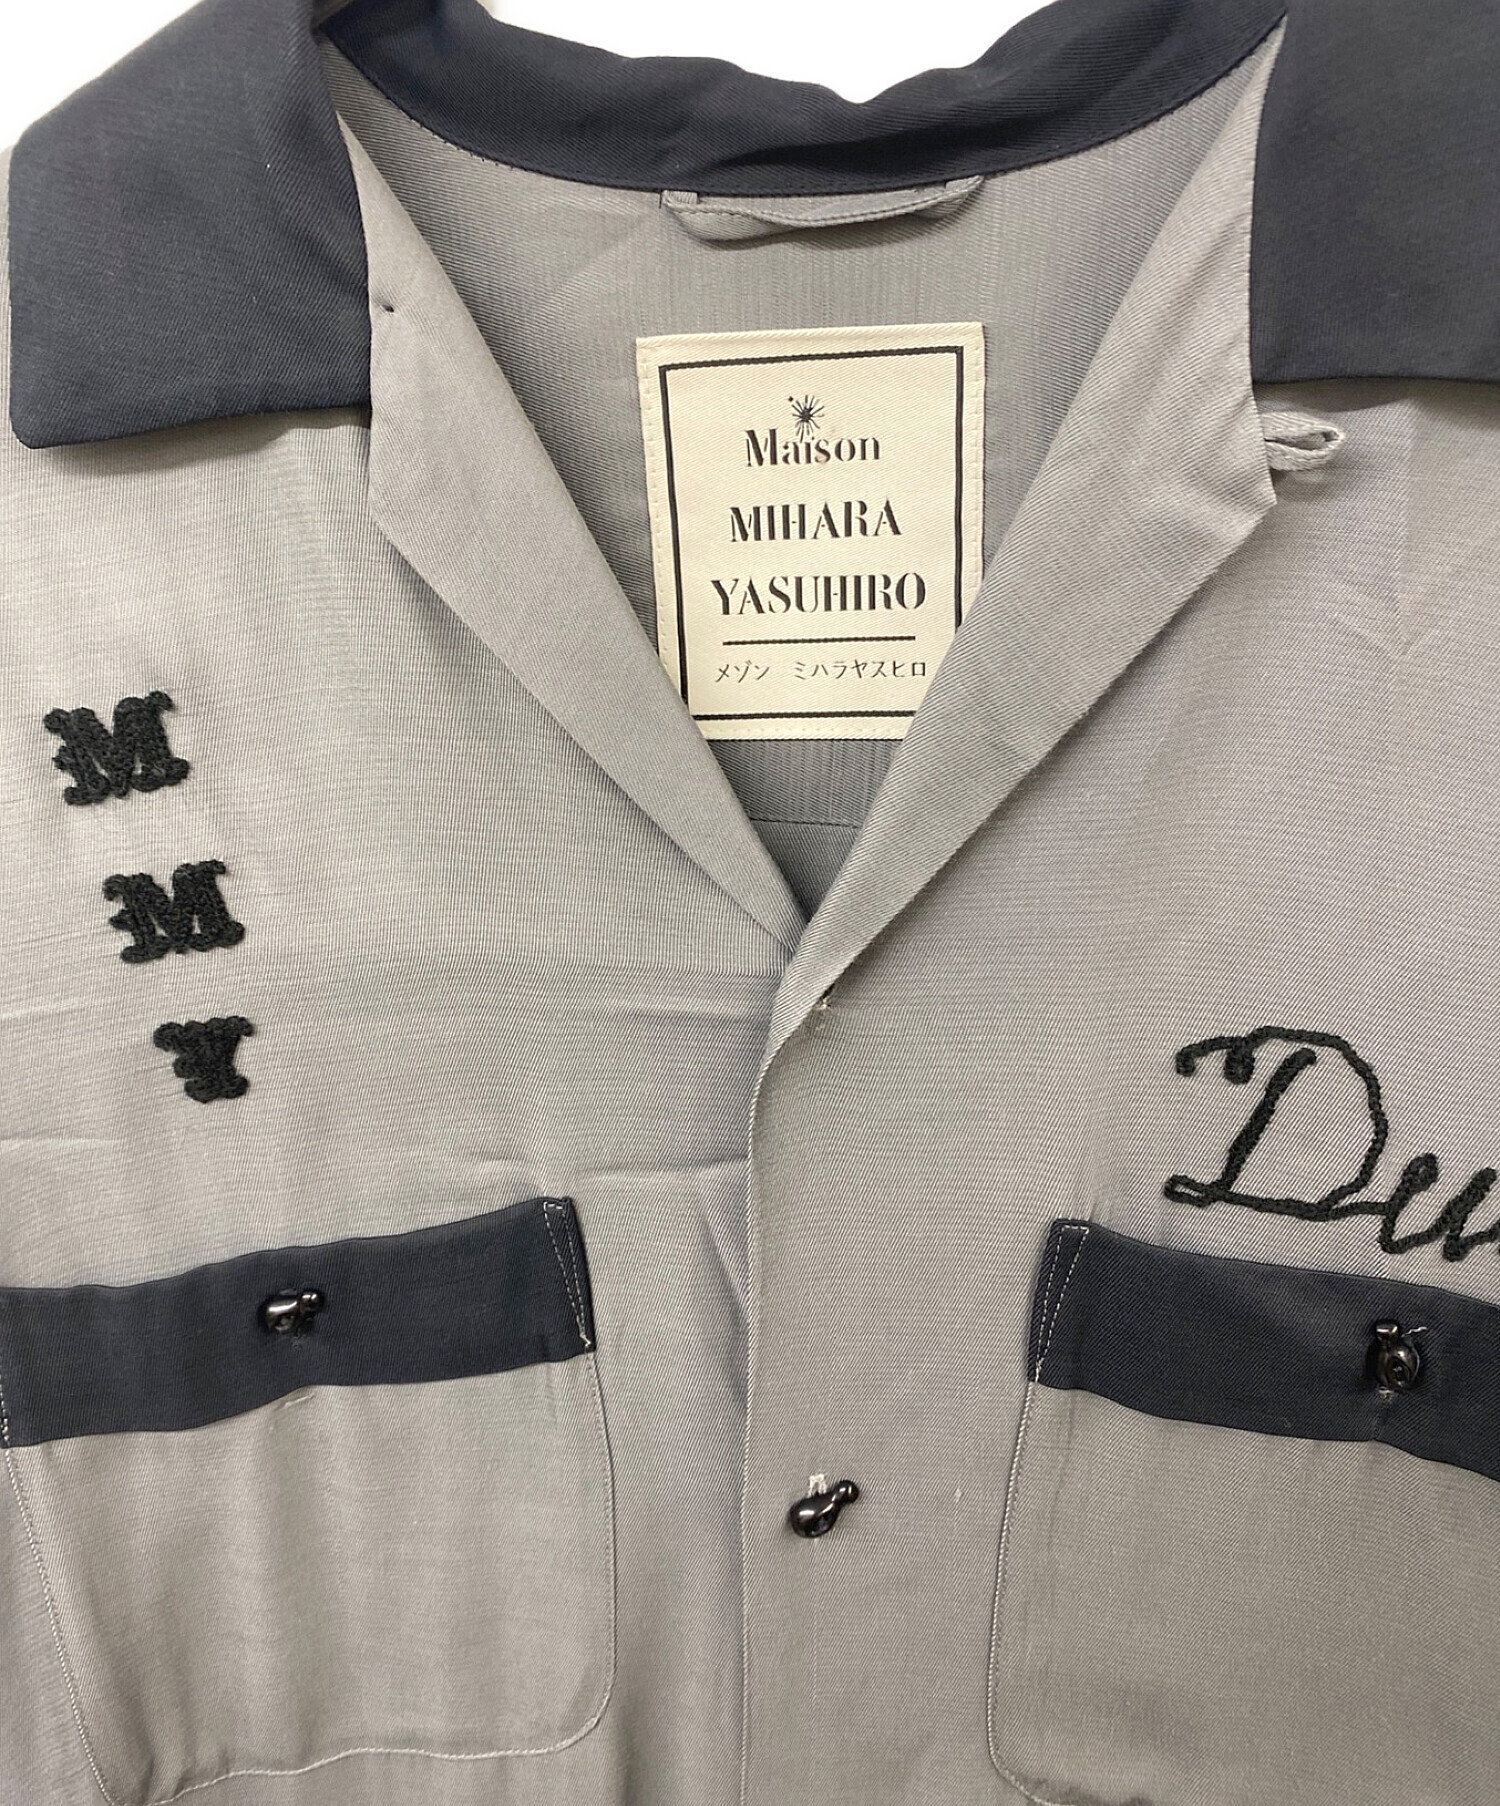 Maison MIHARA YASUHIRO (メゾン ミハラ ヤスヒロ) スカルロングボーリングシャツ グレー サイズ:44